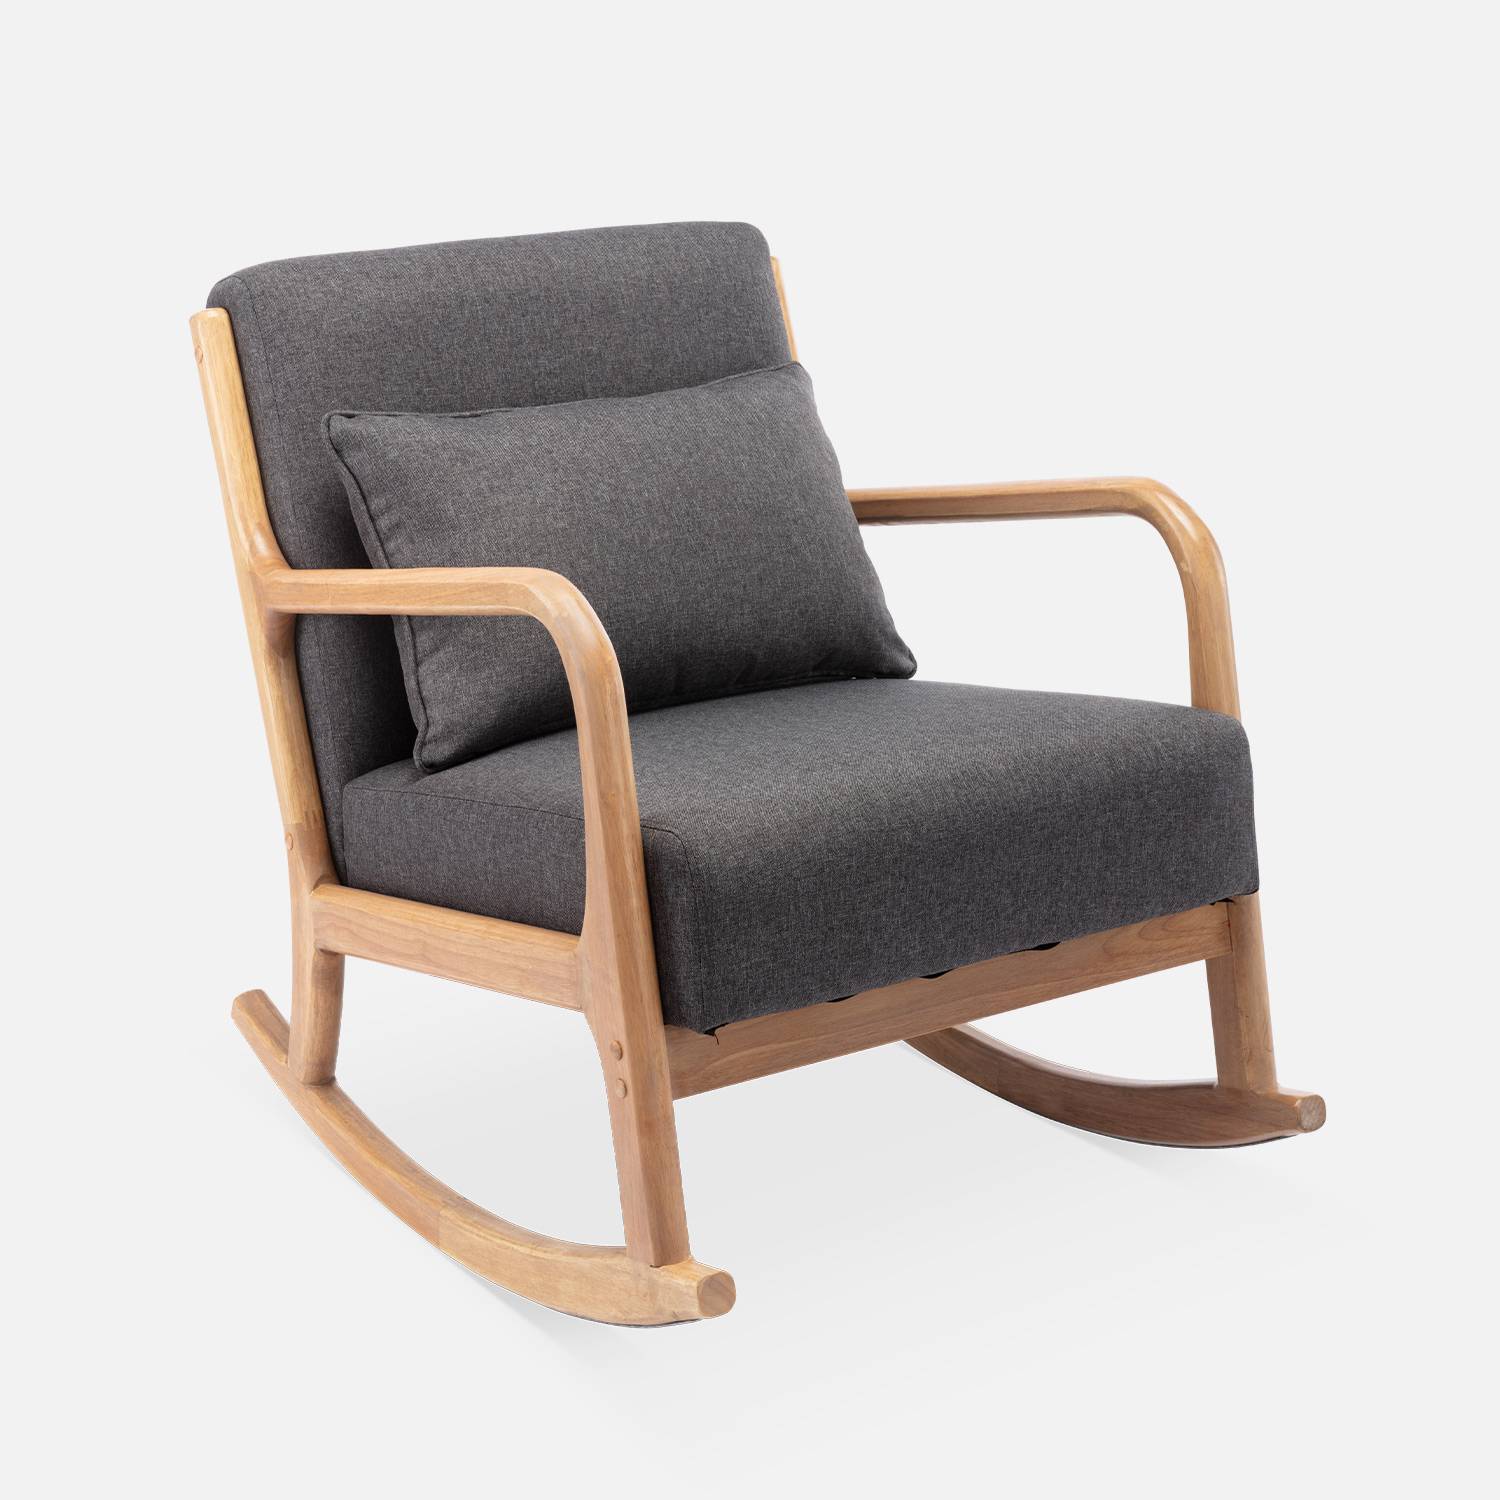 Fauteuil à bascule design en bois et tissu, 1 place, rocking chair scandinave  Photo3